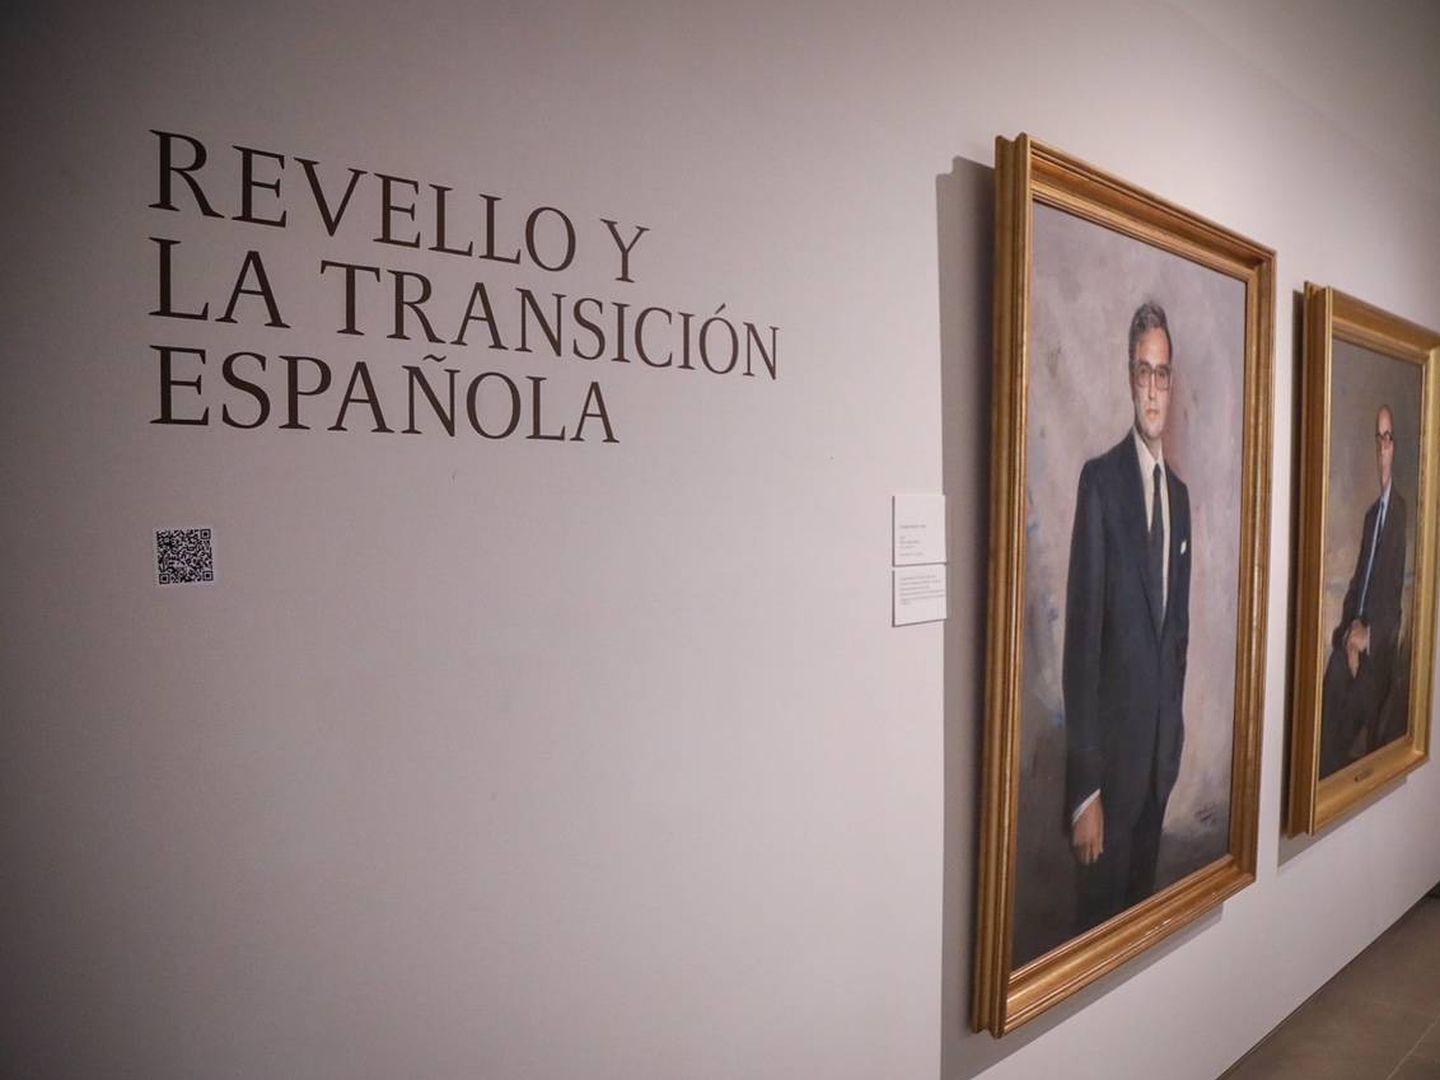 Retratos de Martín Villa y Calvo-Sotelo en la exposición del Museo Revello de Toro.